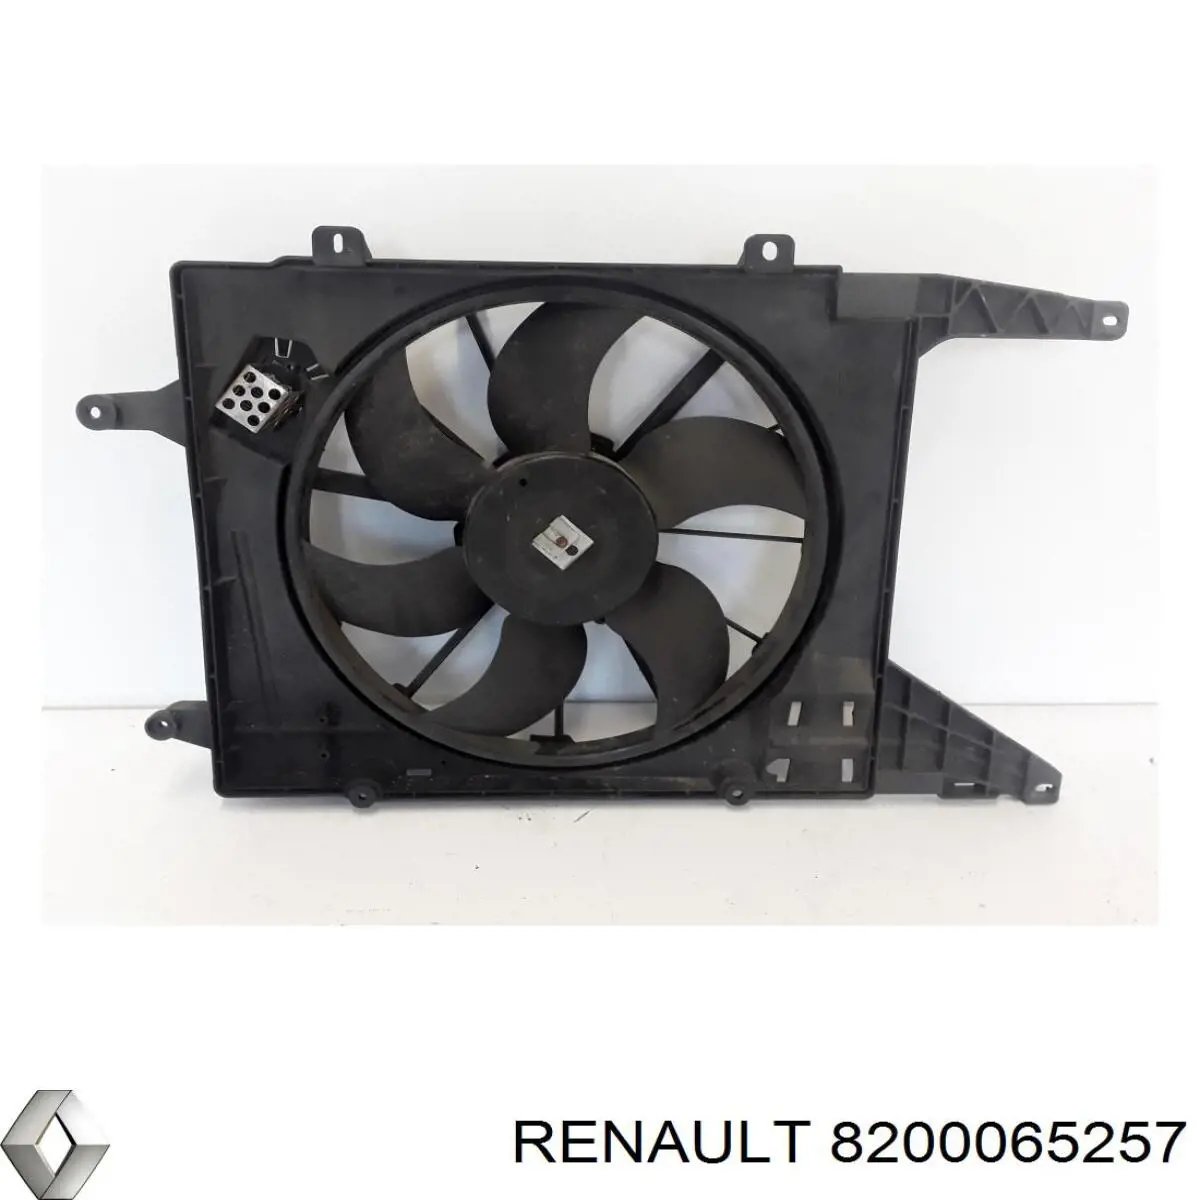 Difusor de radiador, ventilador de refrigeración, condensador del aire acondicionado, completo con motor y rodete para Renault Megane (KA0)